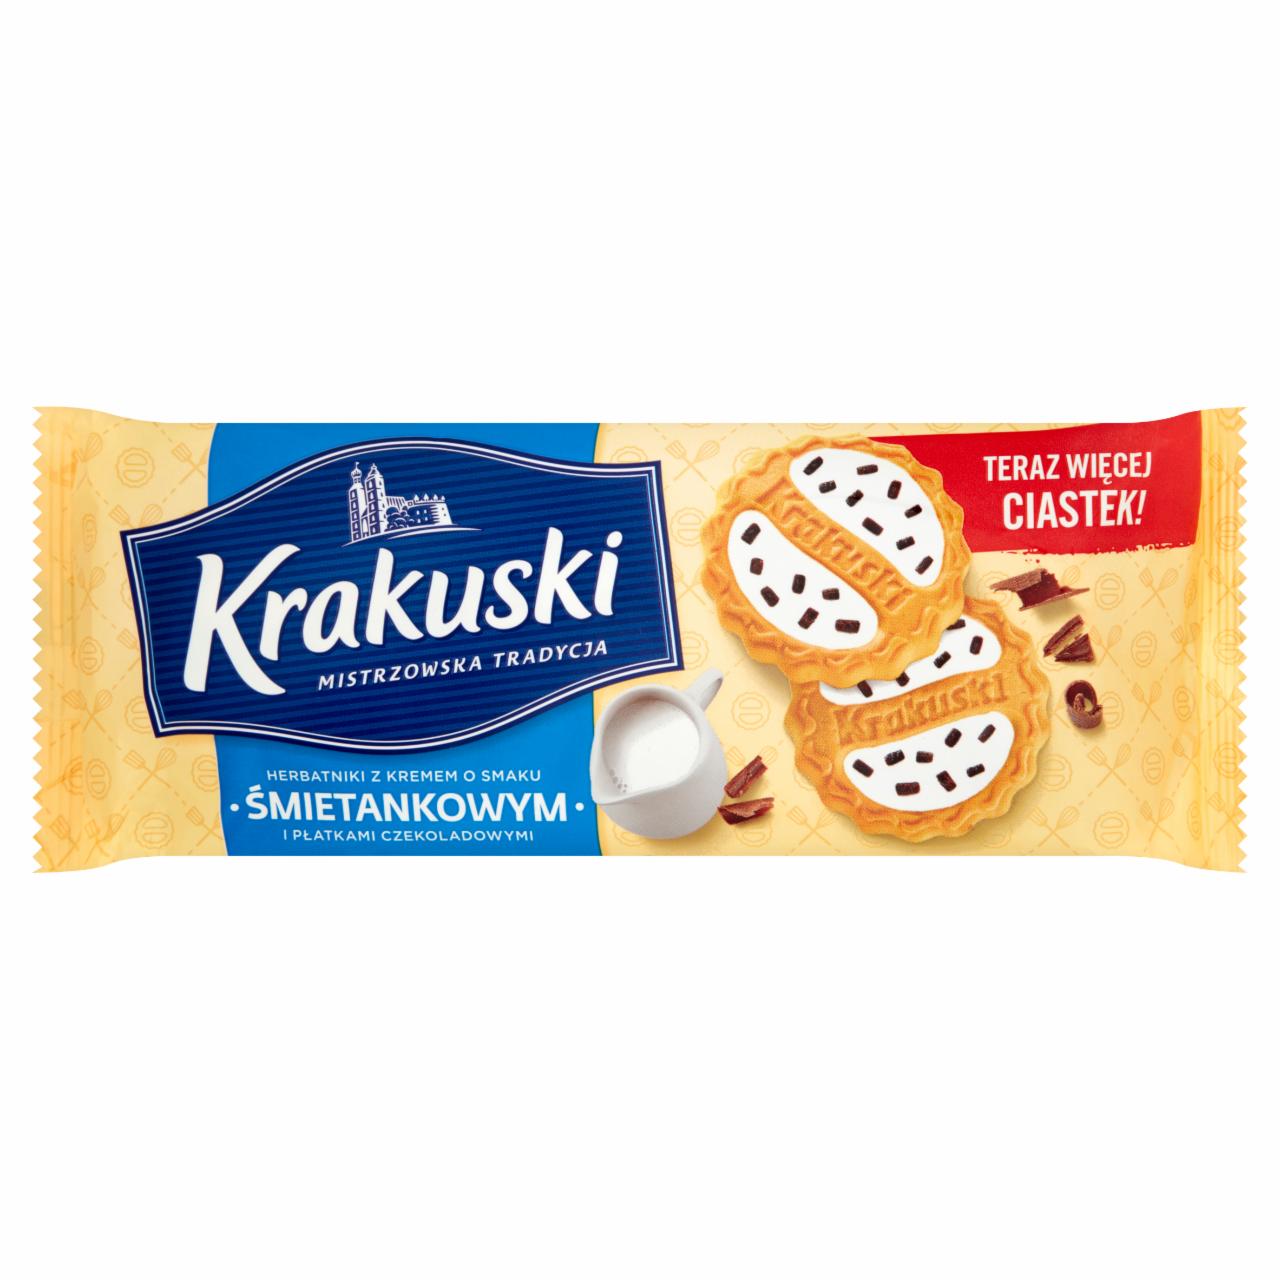 Фото - Печенье со сливочной начинкой и шоколадной крошкой Krakuski